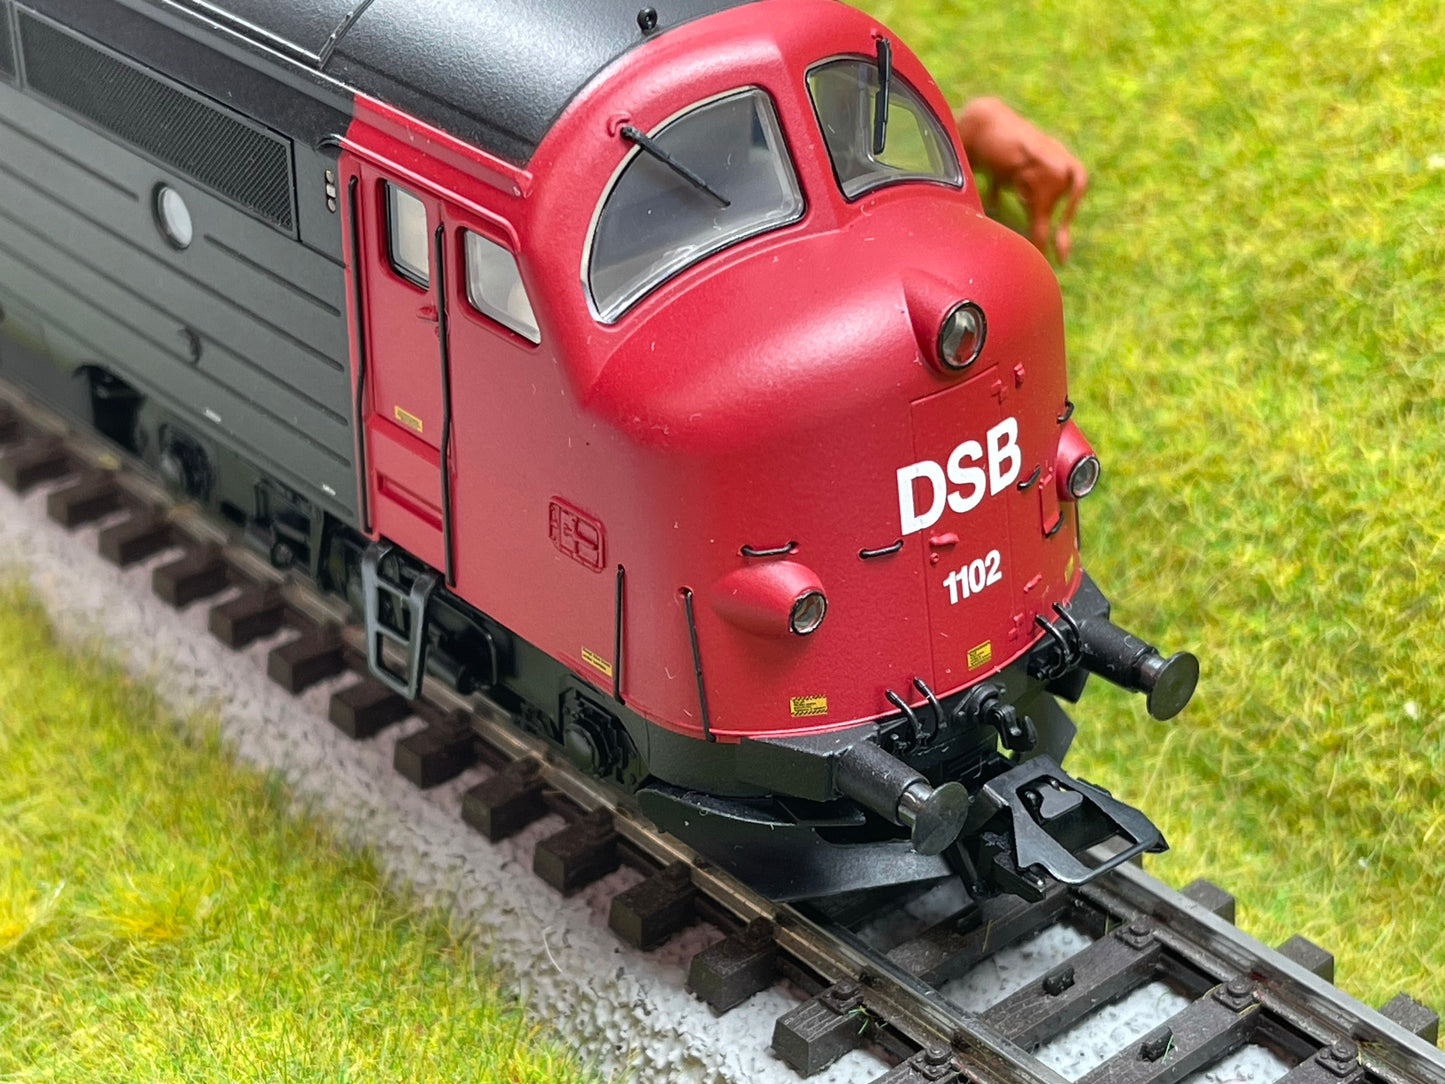 Marklin 39685 - Class MV Diesel Locomotive